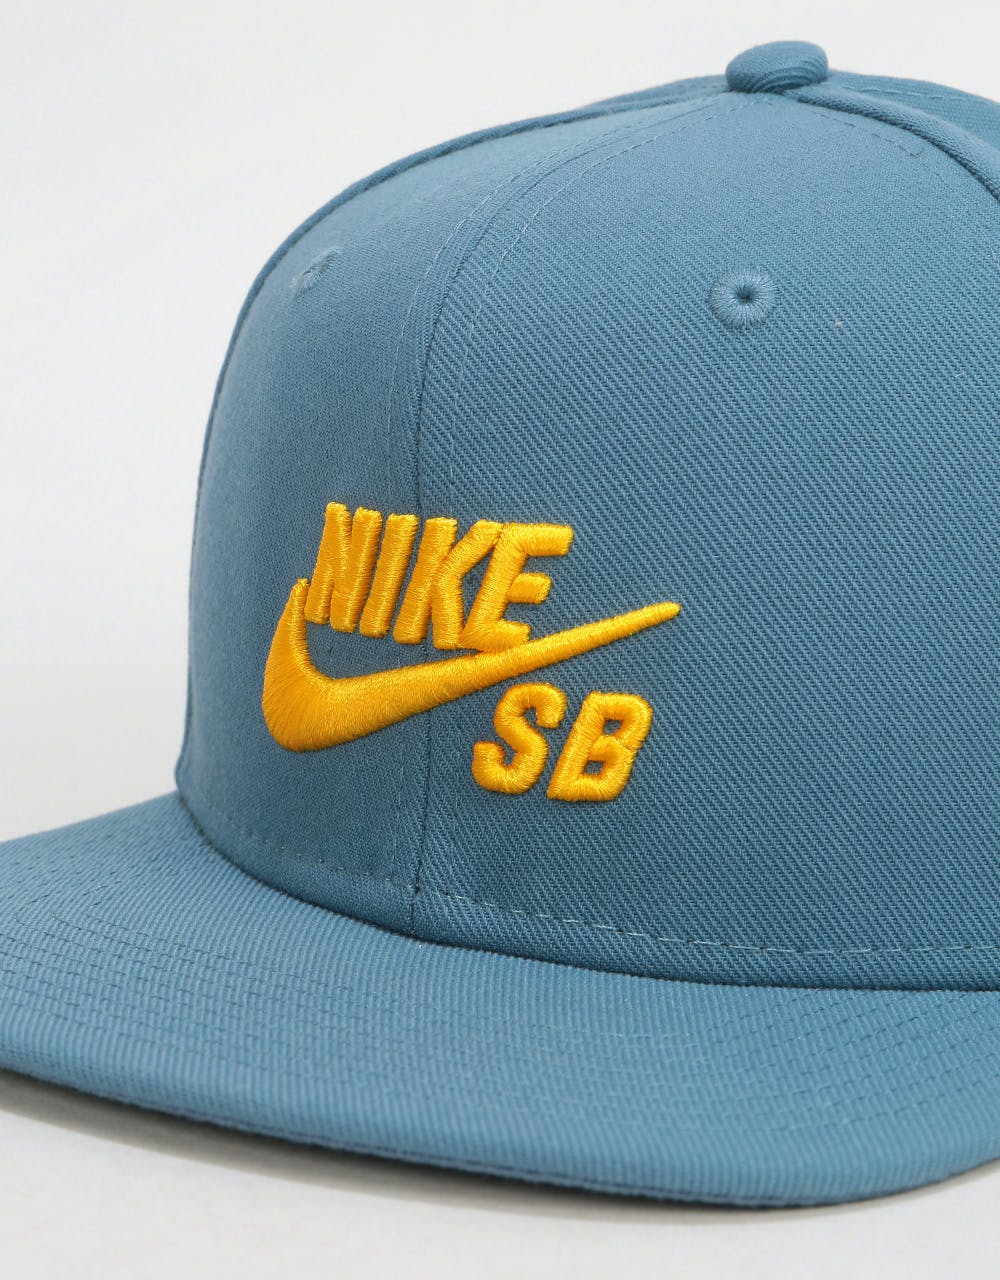 Nike SB Icon Snapback Cap - Thunderstorm/Yellow Ochre